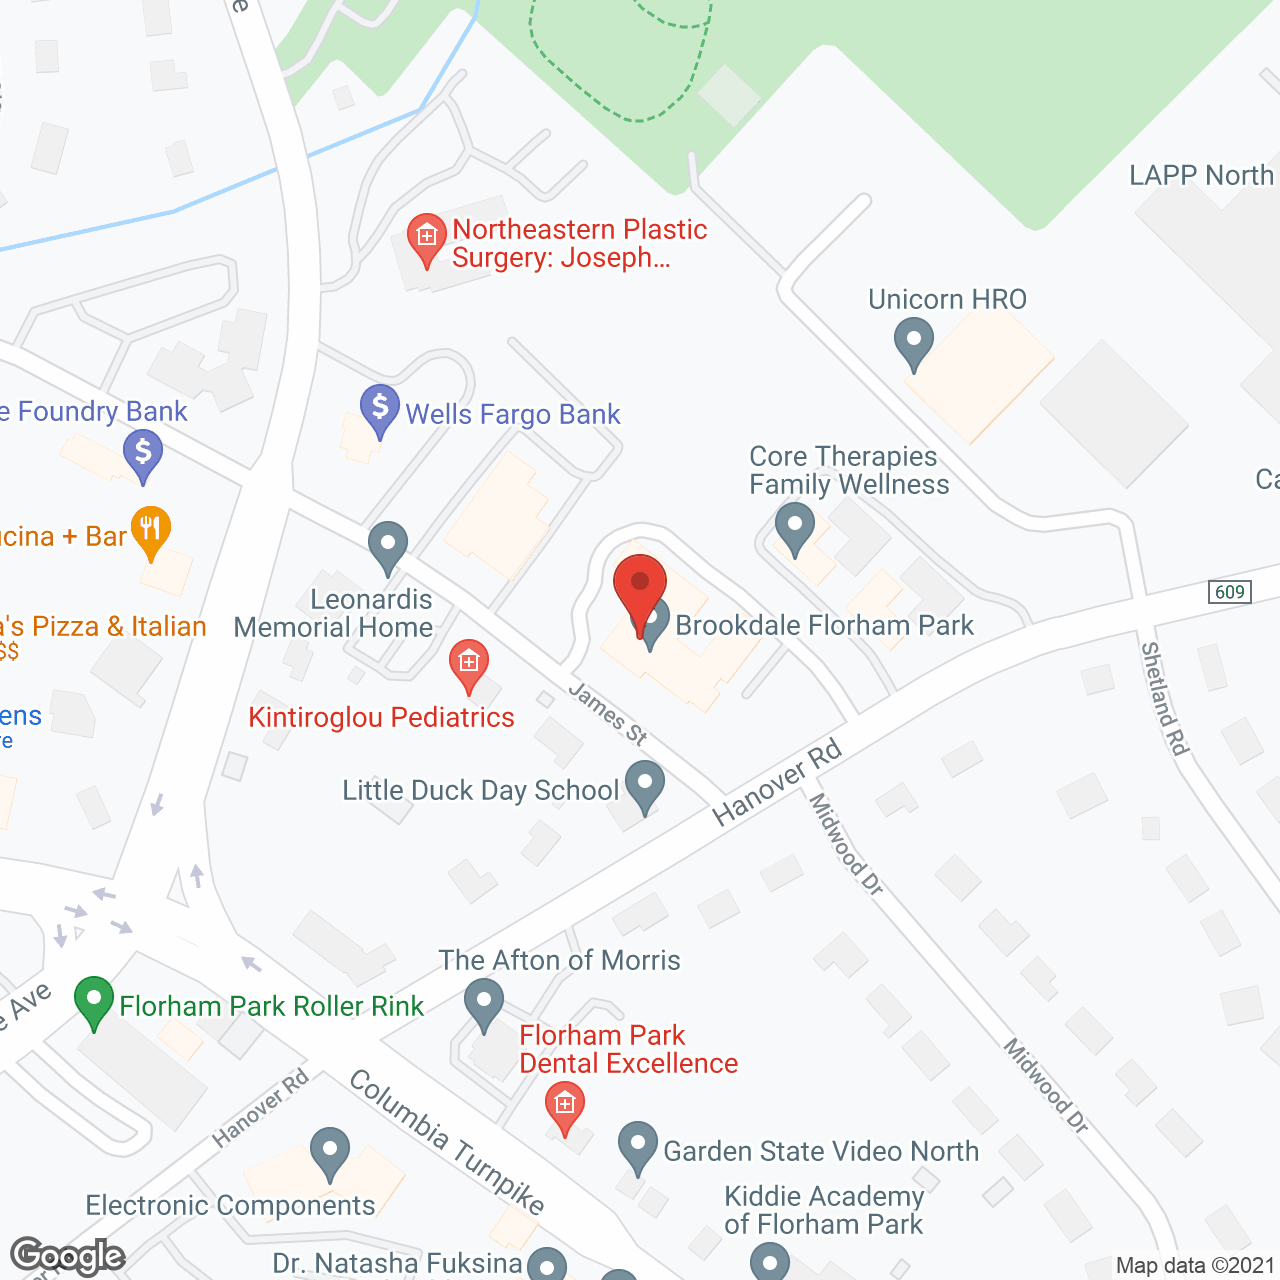 Brookdale Florham Park in google map